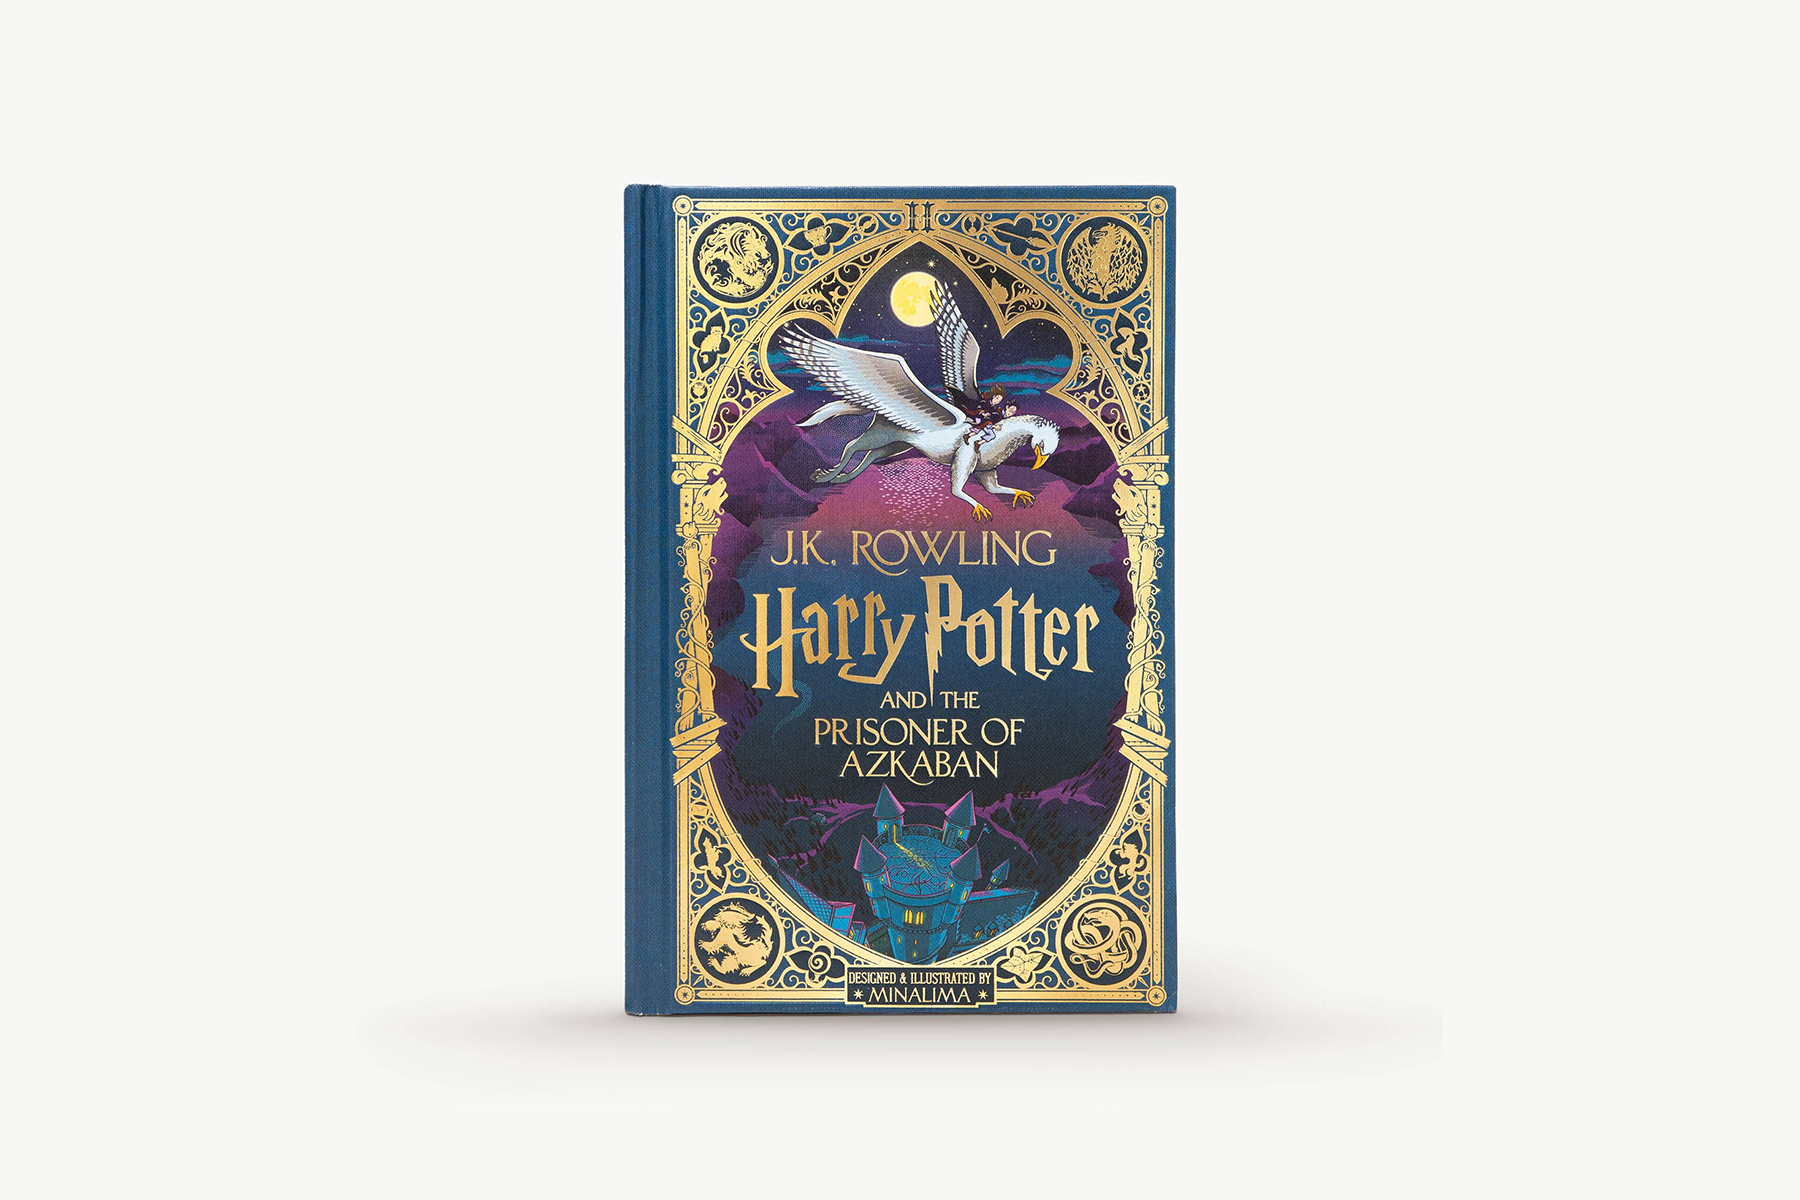 Harry Potter and the Prisoner of Azkaban: MinaLima Edition published today